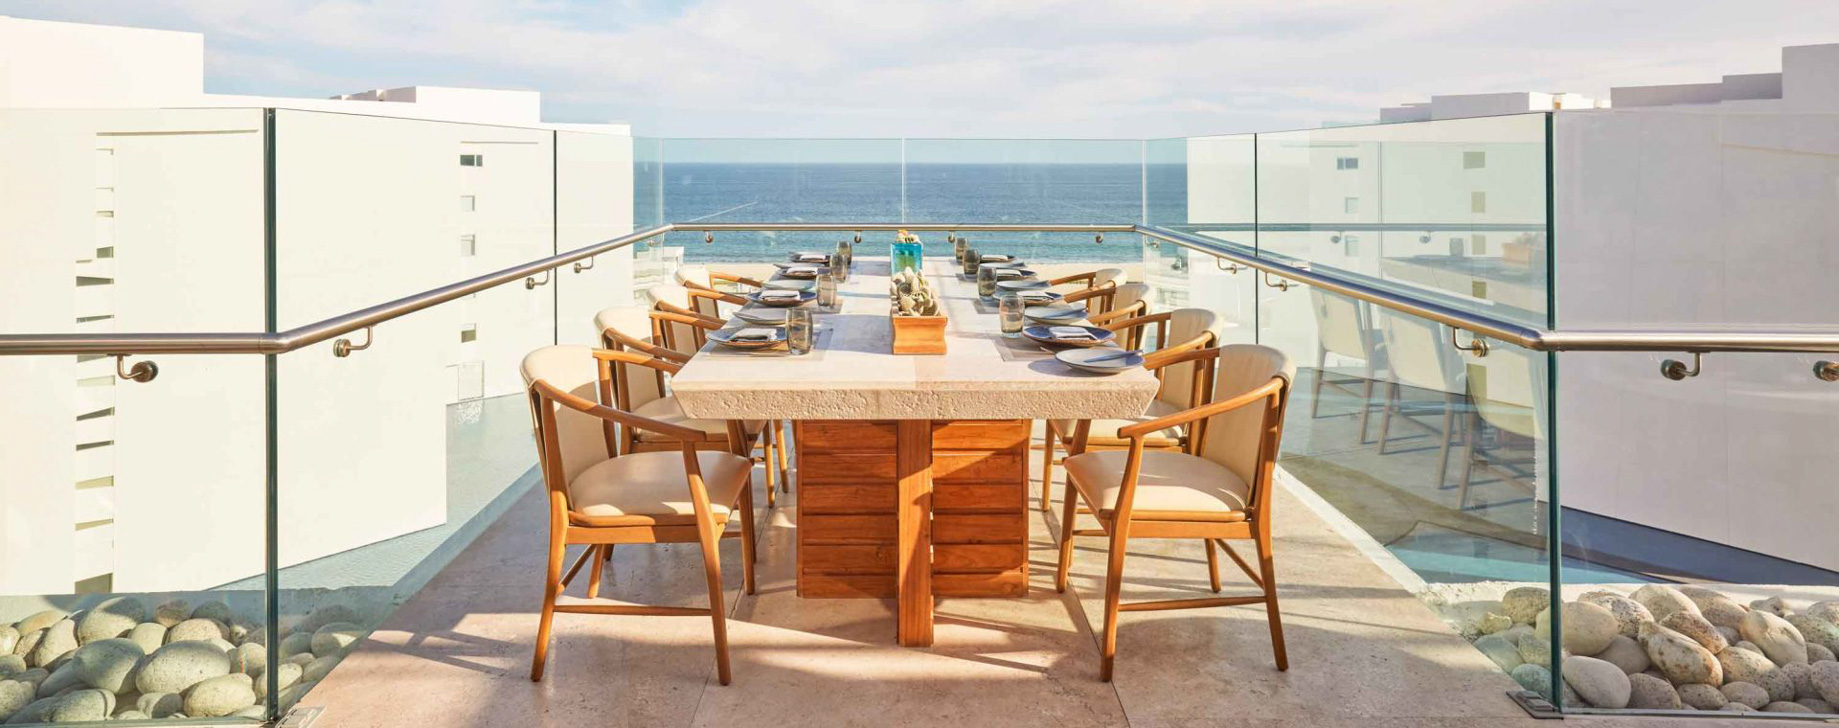 Viceroy Los Cabos Resort - San José del Cabo, Mexico - Cielomar Rooftop Restaurant